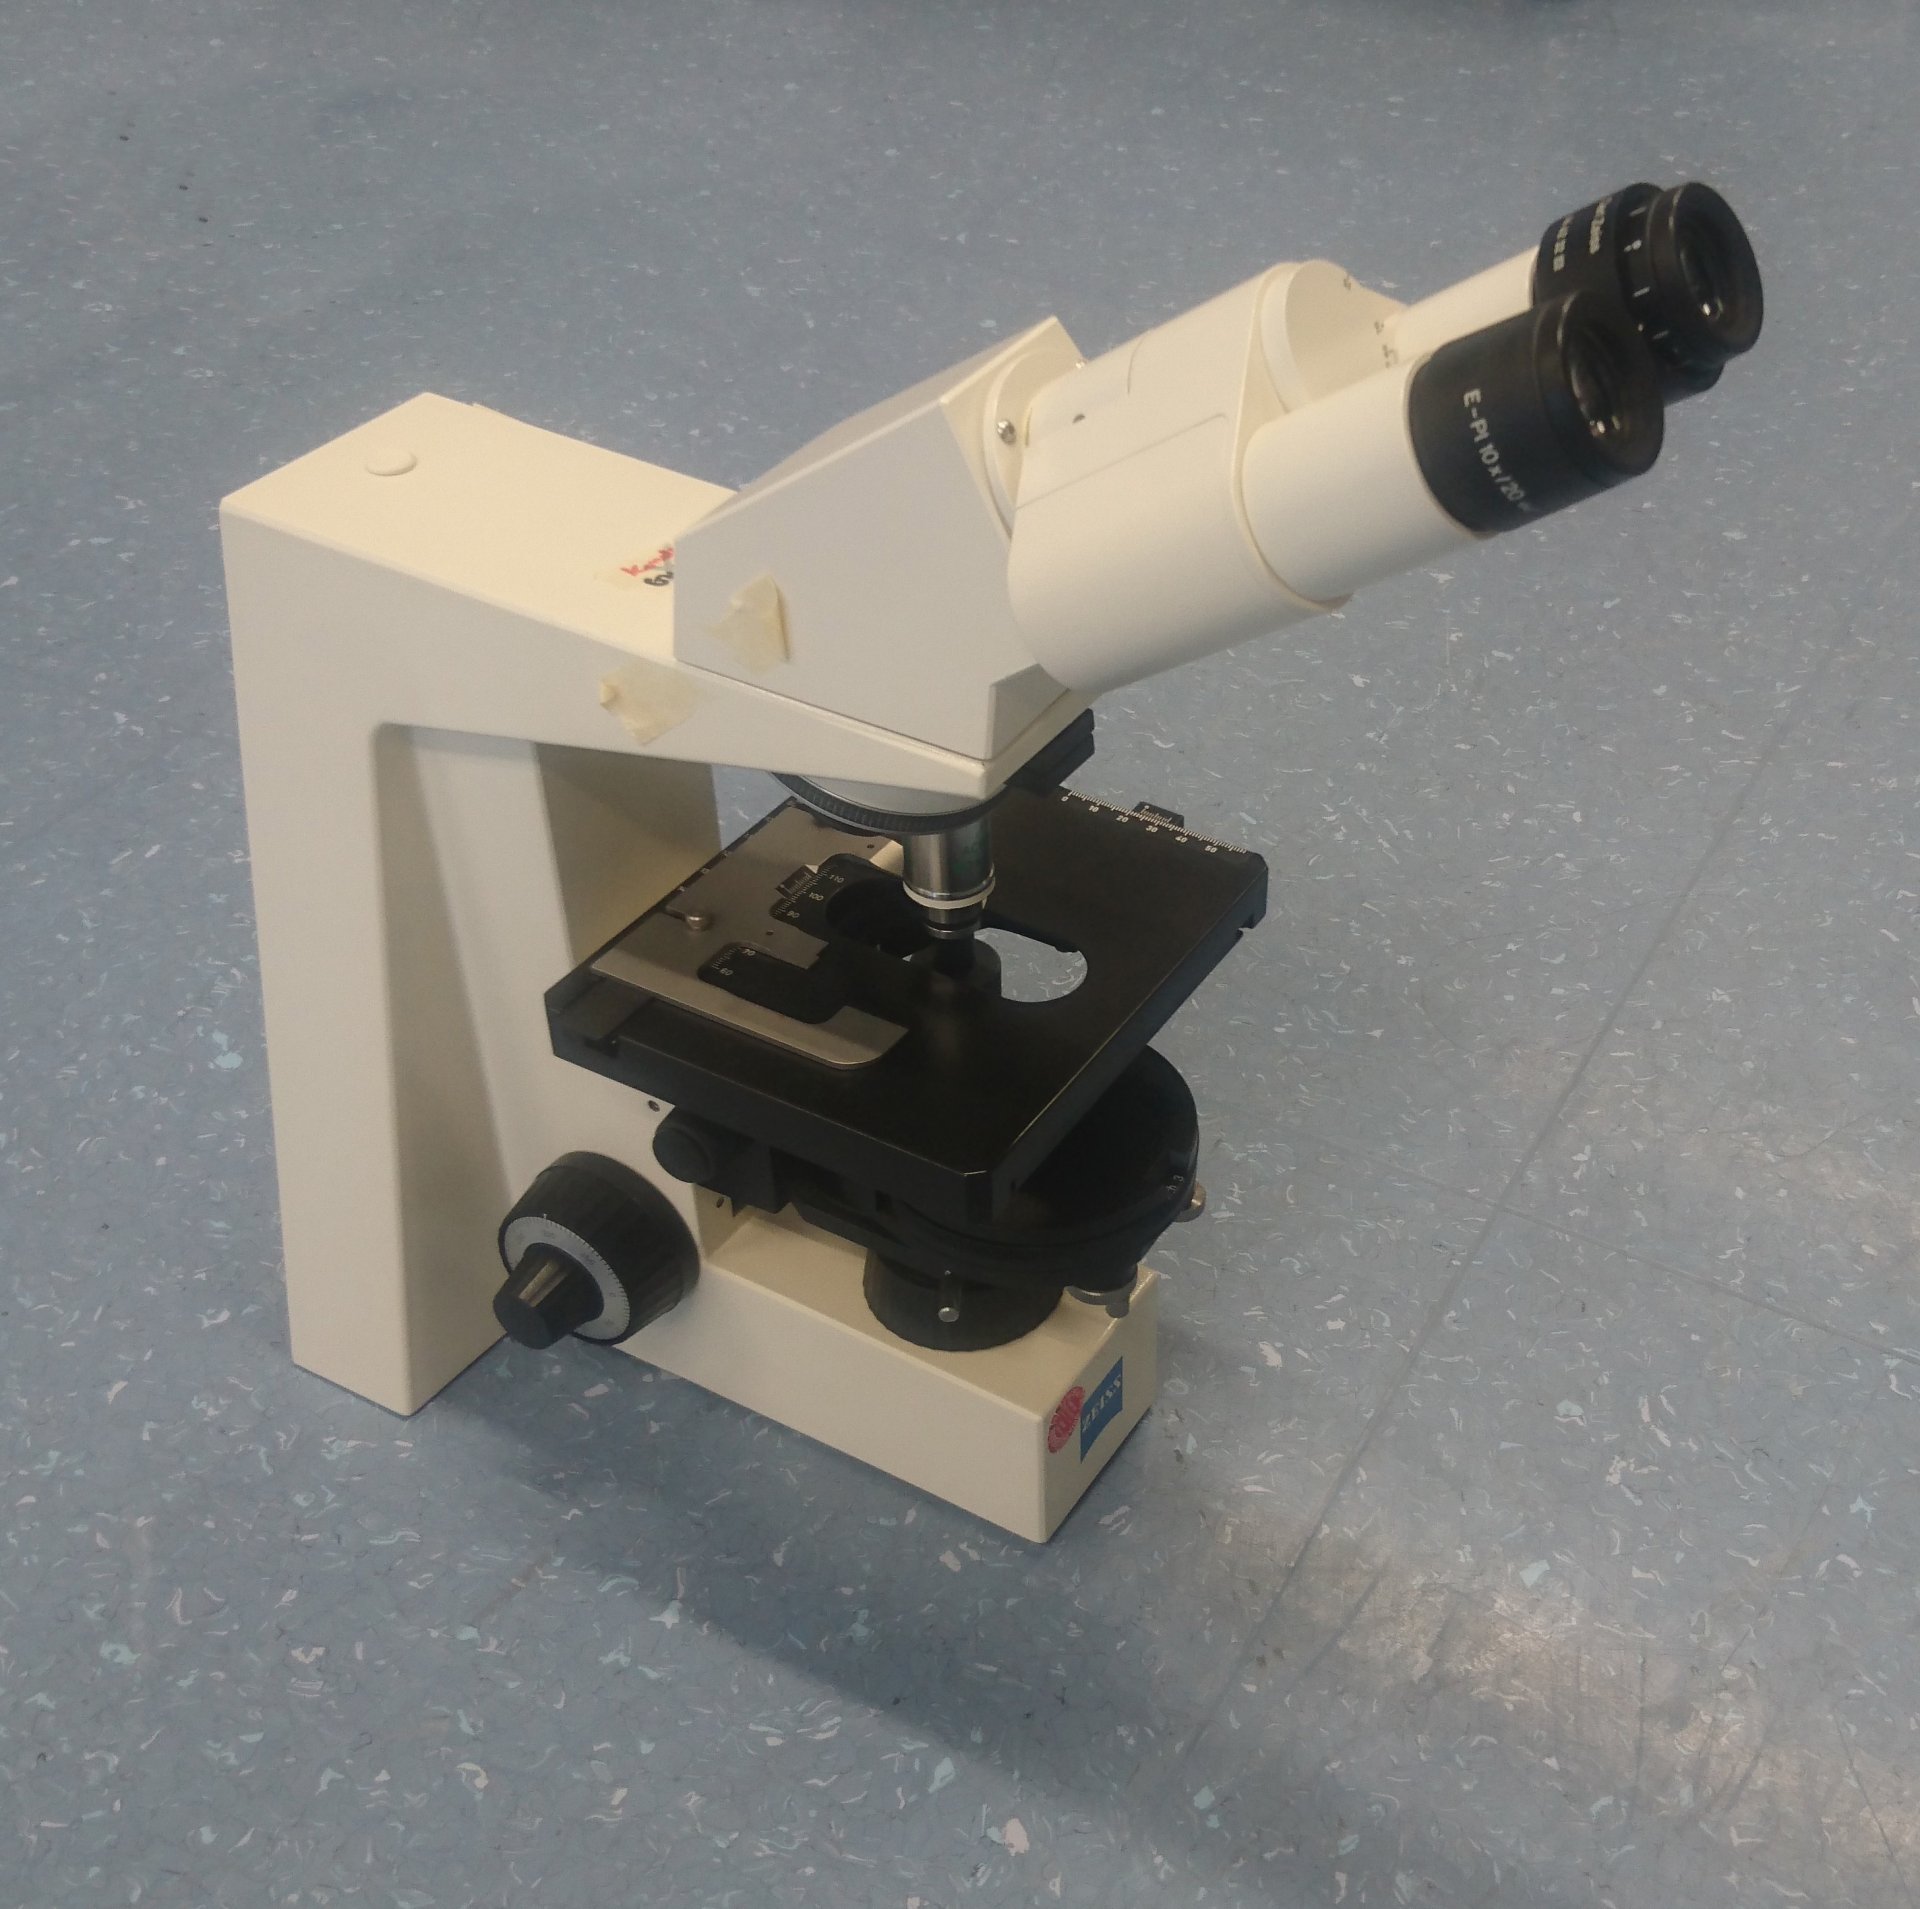 Ein Mikroskop zur Vergrößerung. (© Max-Planck-Institut für Marine Mikrobiologie / F. Aspetsberger)